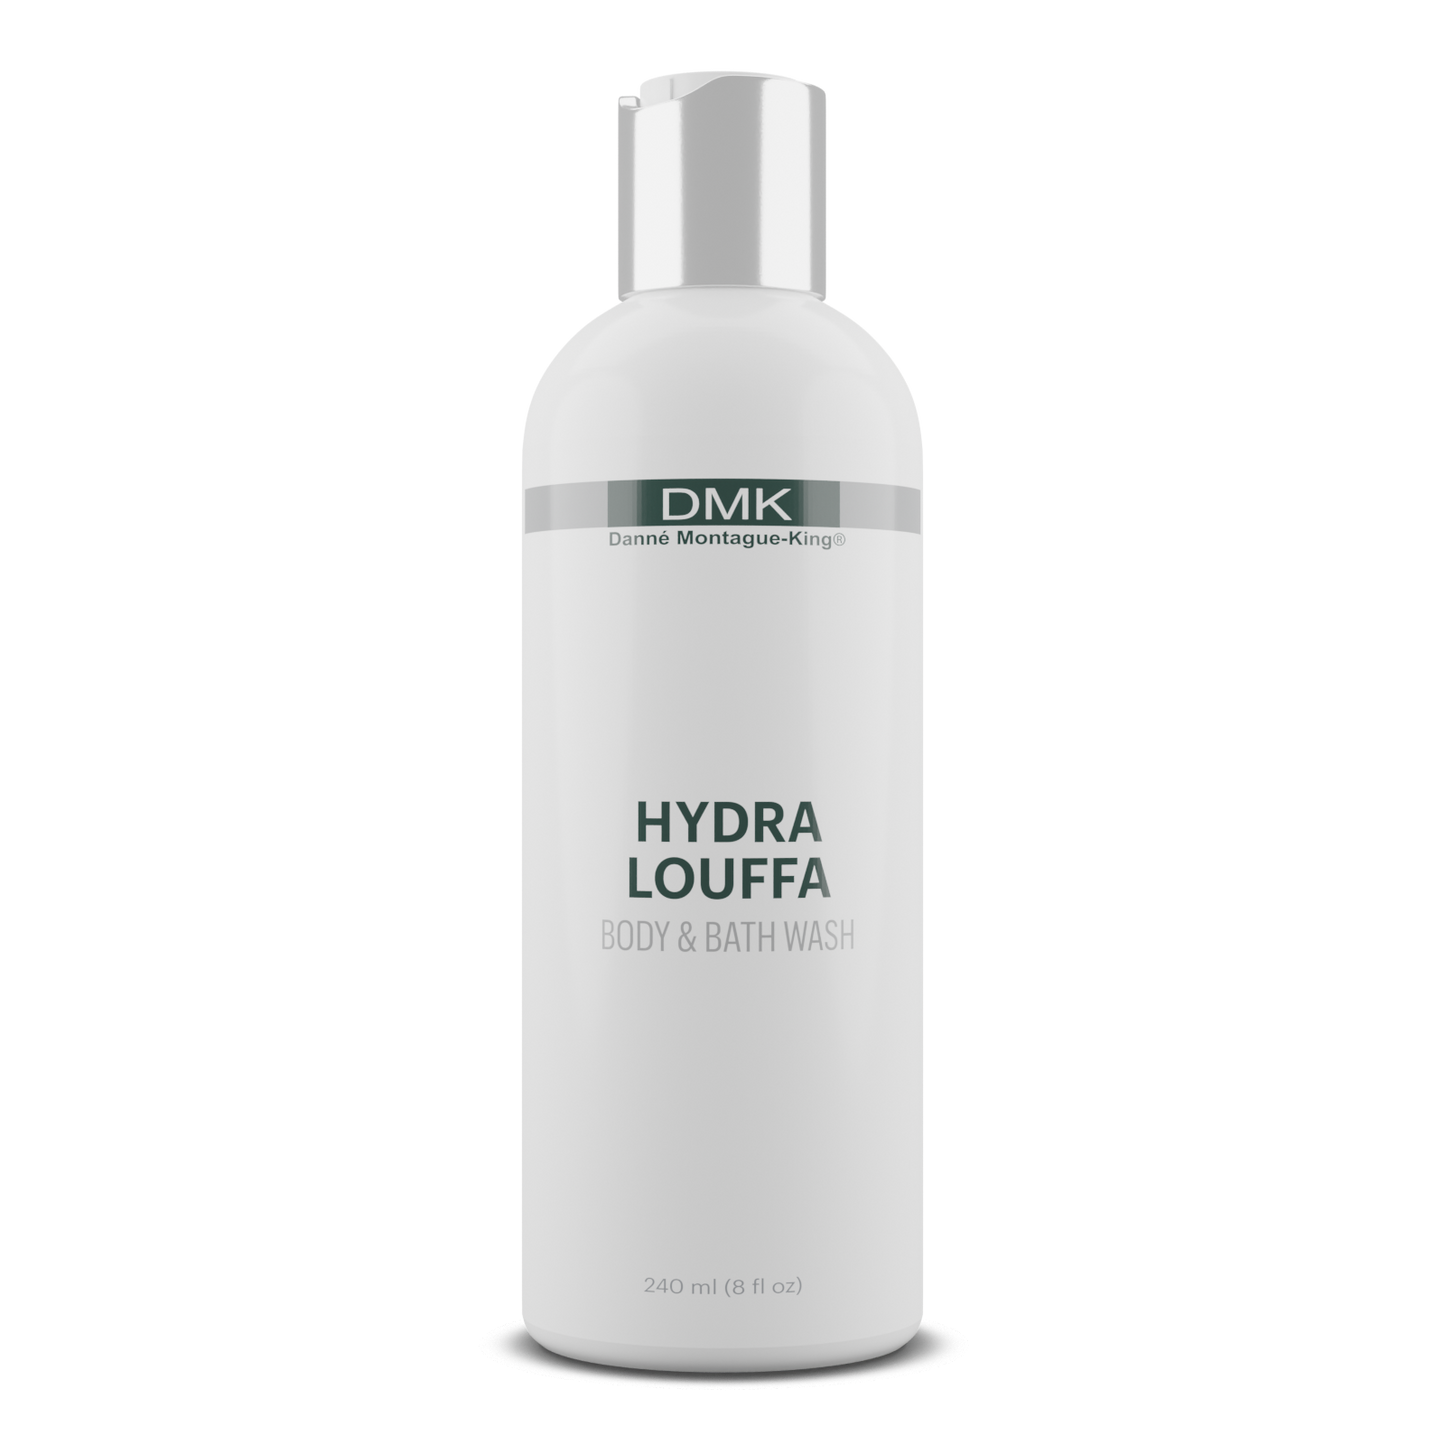 Hydra Louffa